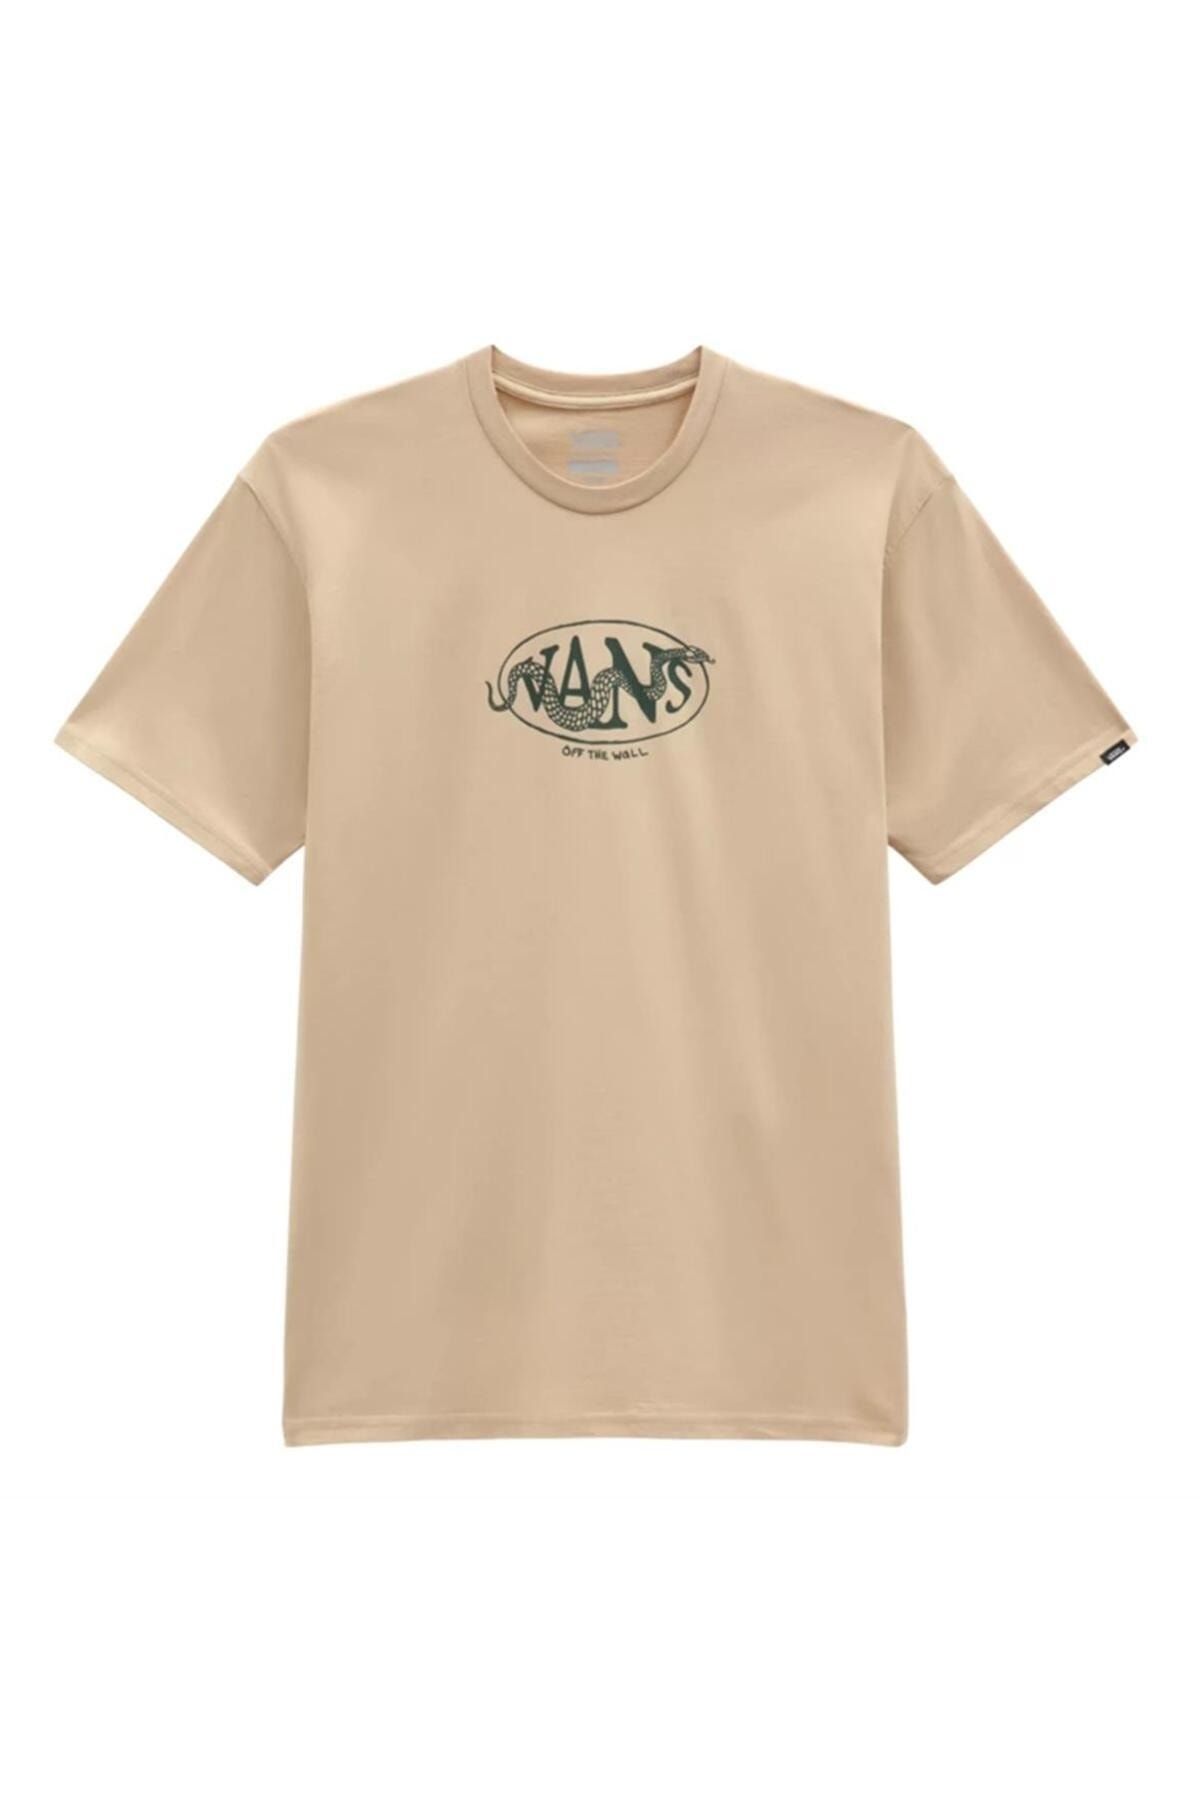 Vans Snaked Center Logo T-Shirt